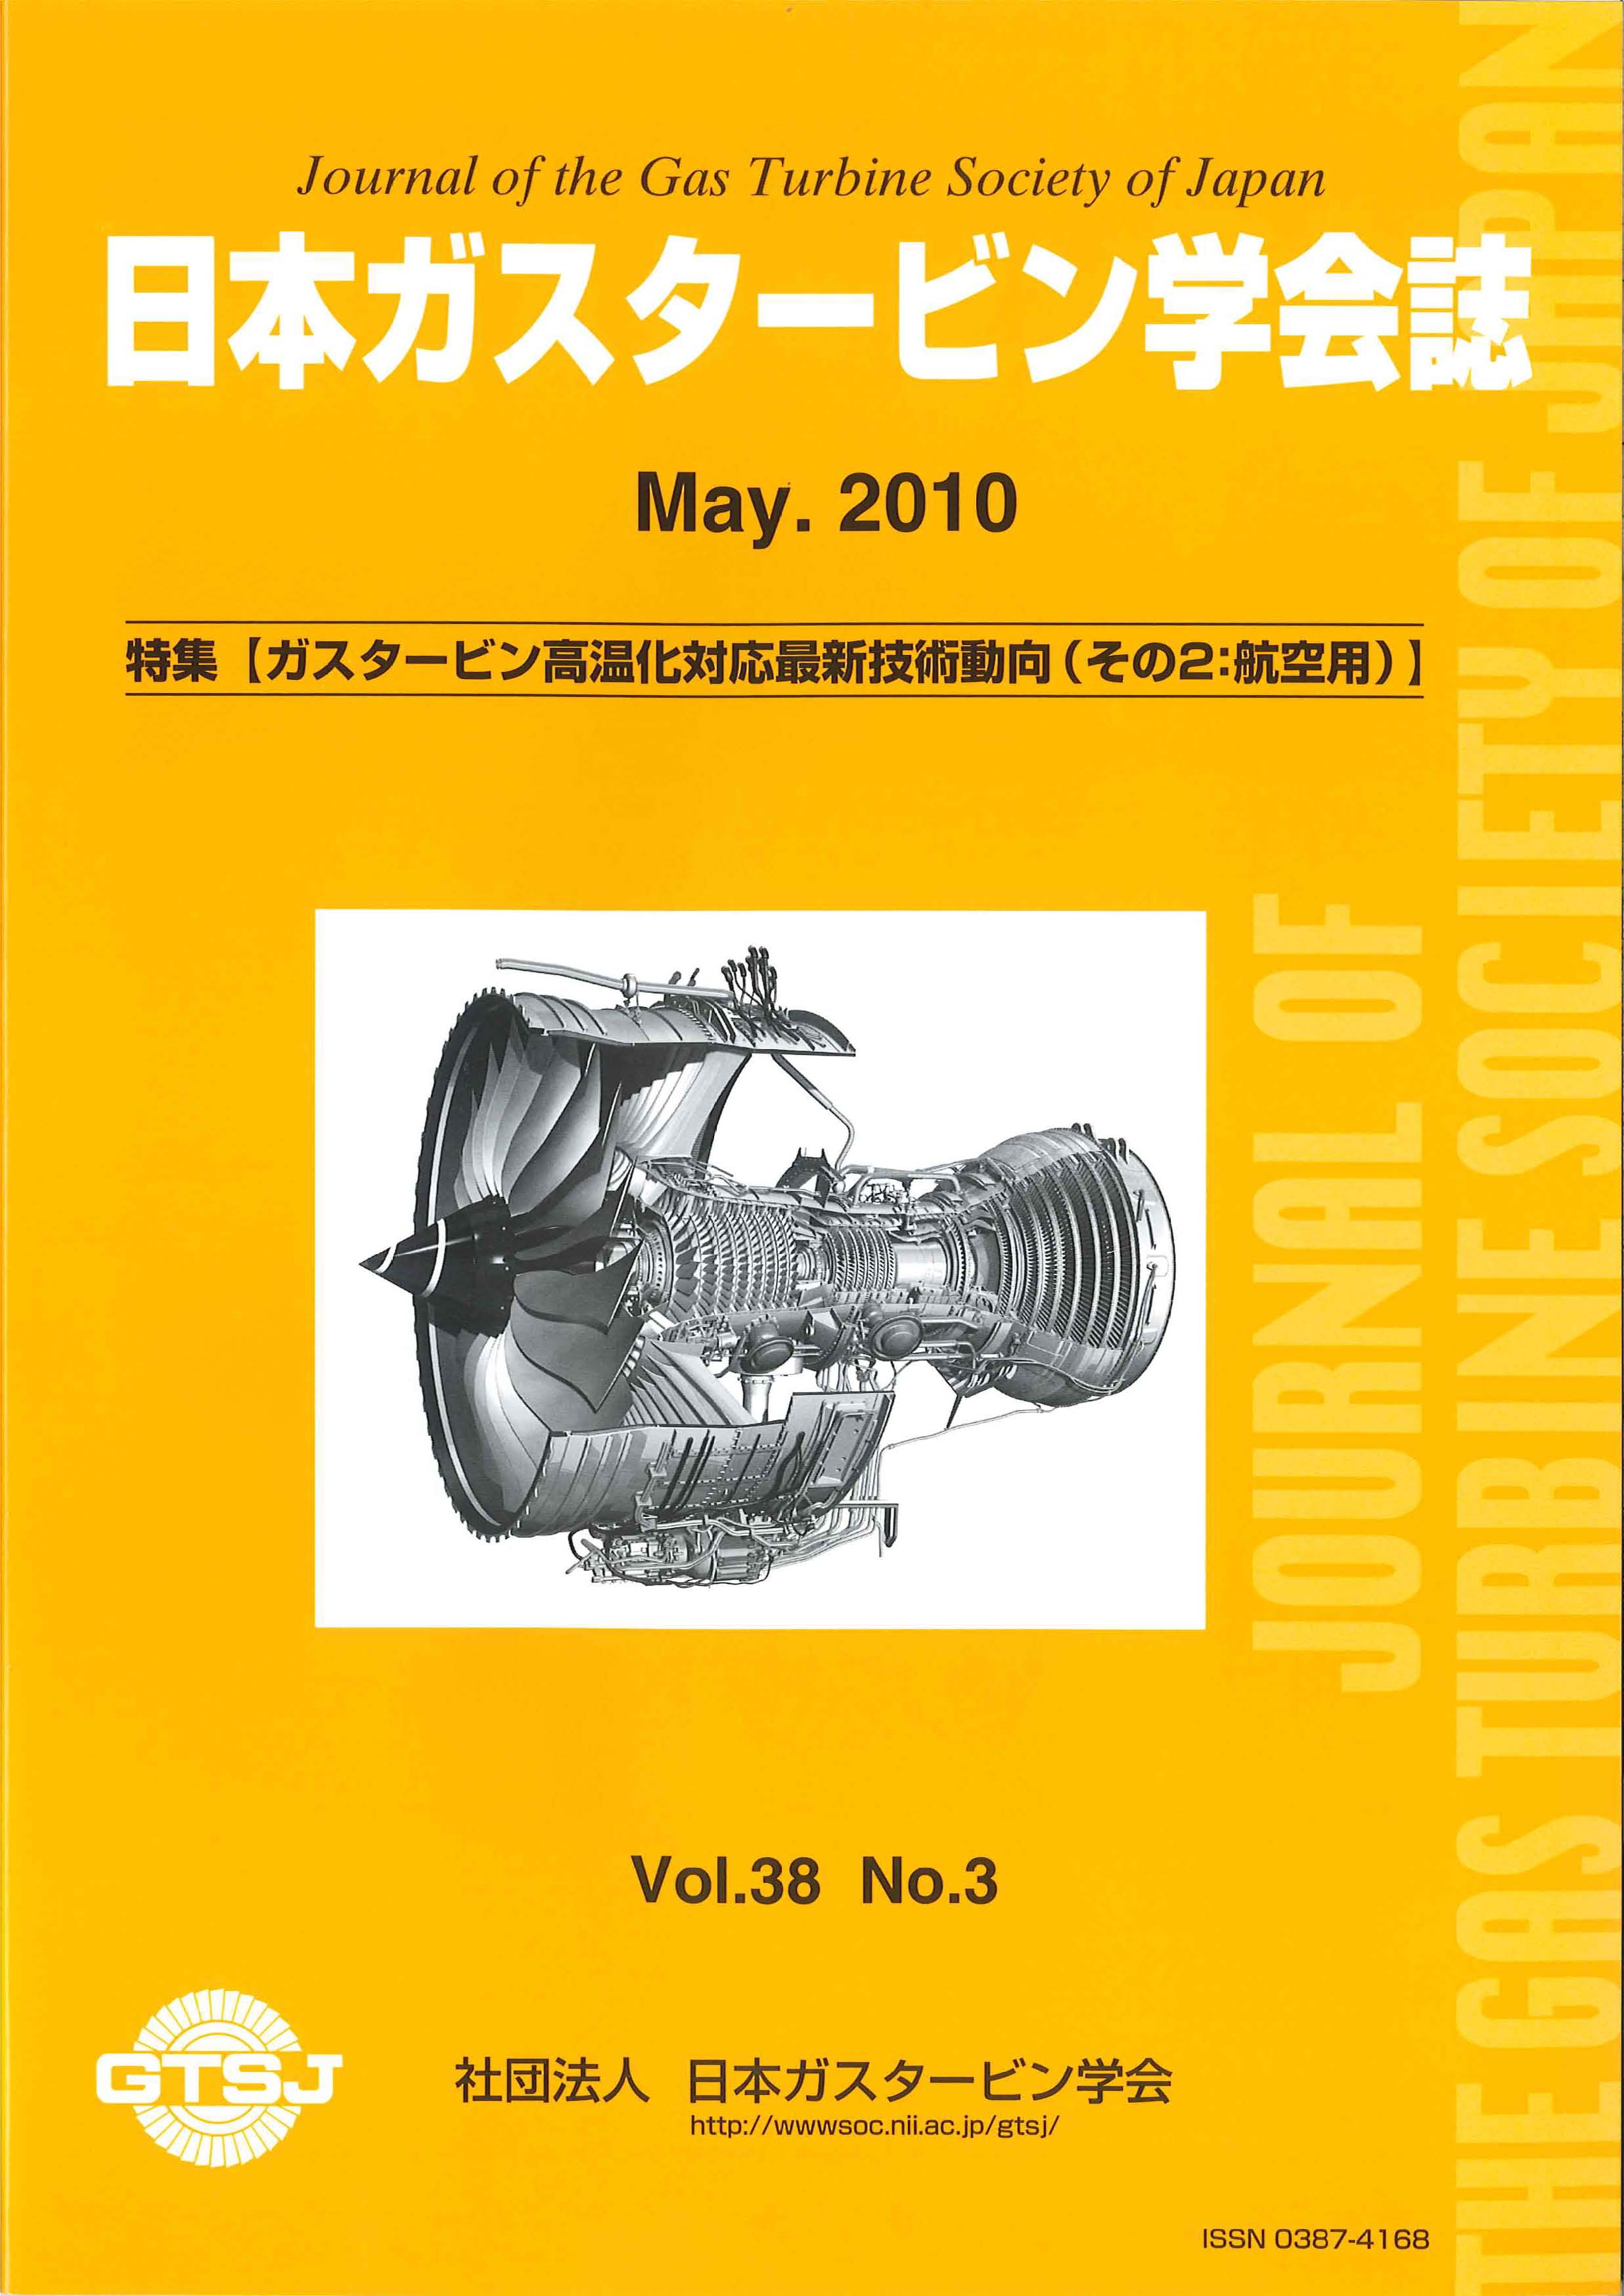 日本ガスタービン学会誌 Vol.38 No.3 2010年5月 表紙画像